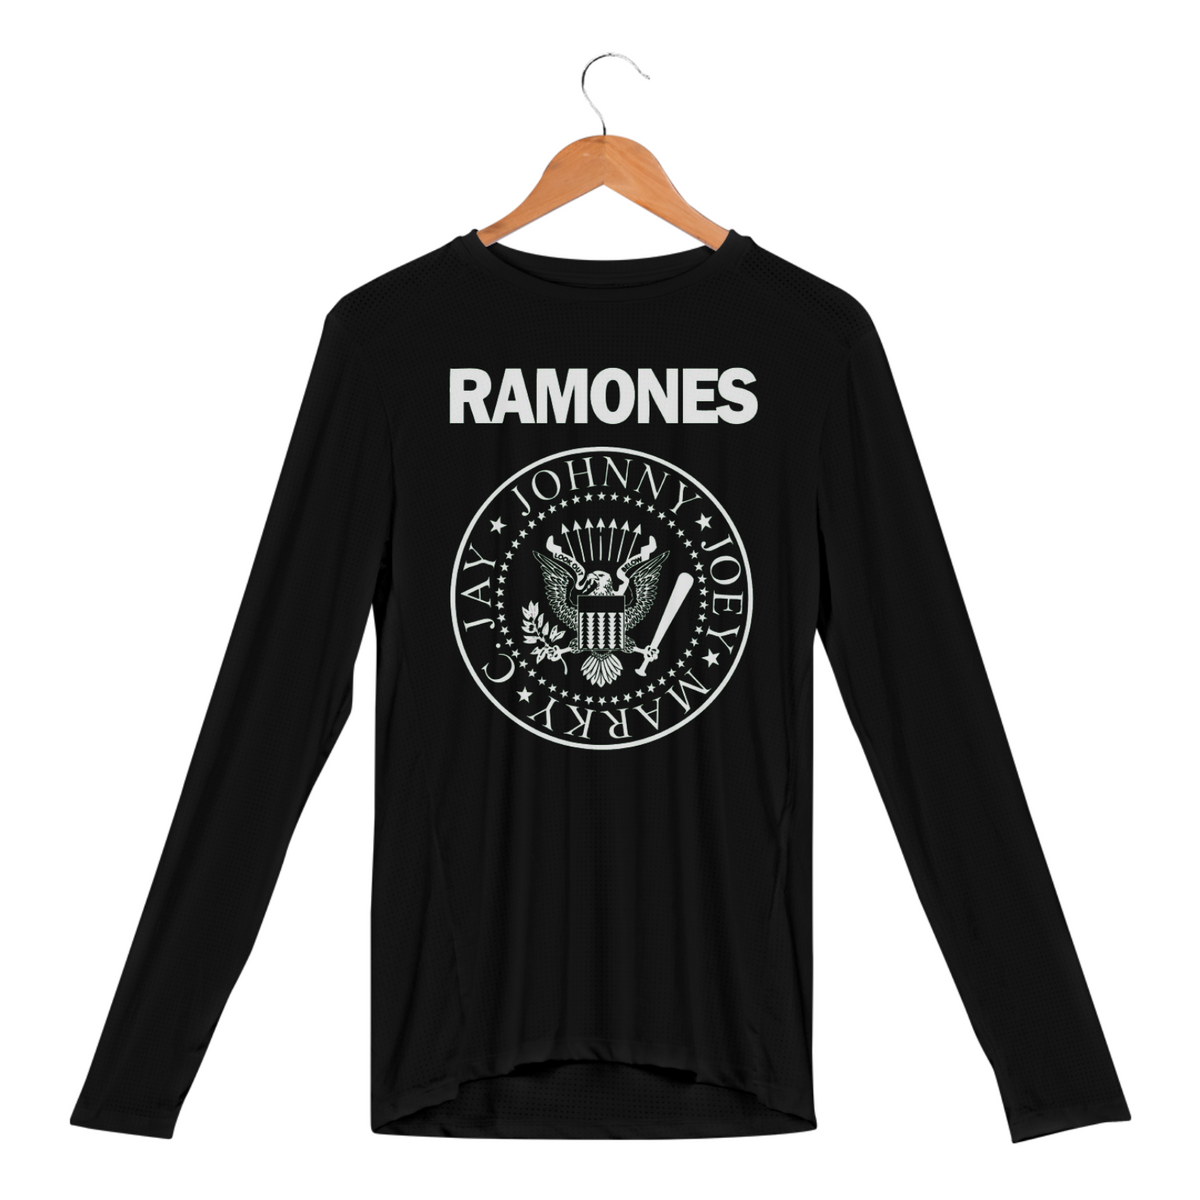 Nome do produto: Ramones